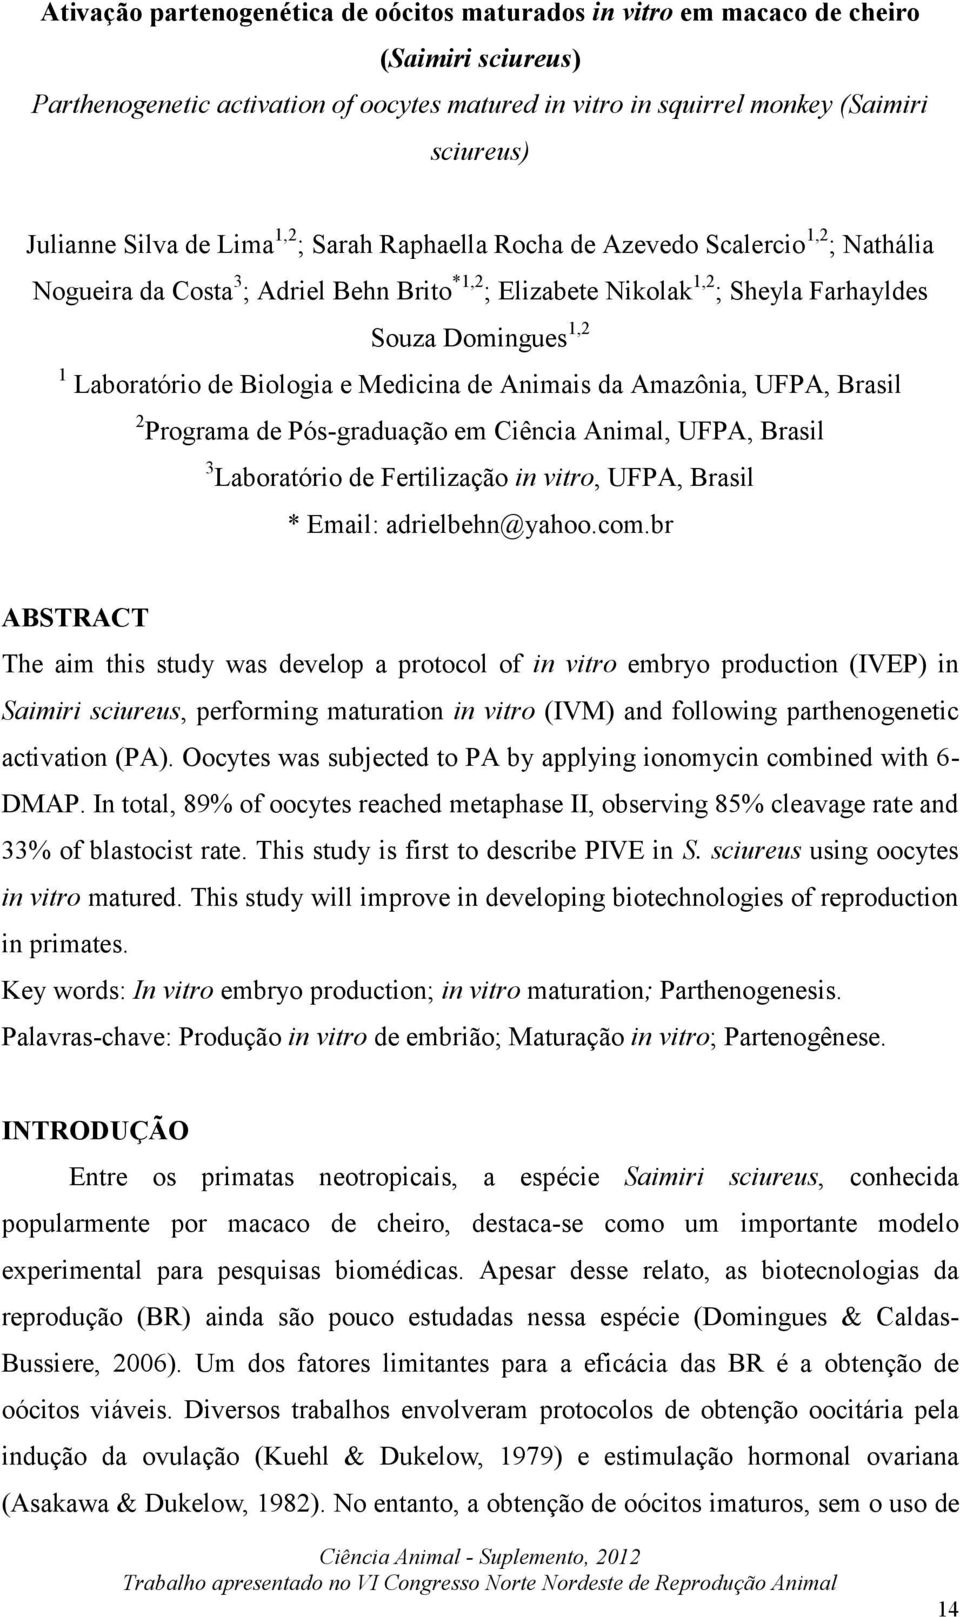 Laboratório de Biologia e Medicina de Animais da Amazônia, UFPA, Brasil 2 Programa de Pós-graduação em Ciência Animal, UFPA, Brasil 3 Laboratório de Fertilização in vitro, UFPA, Brasil * Email: